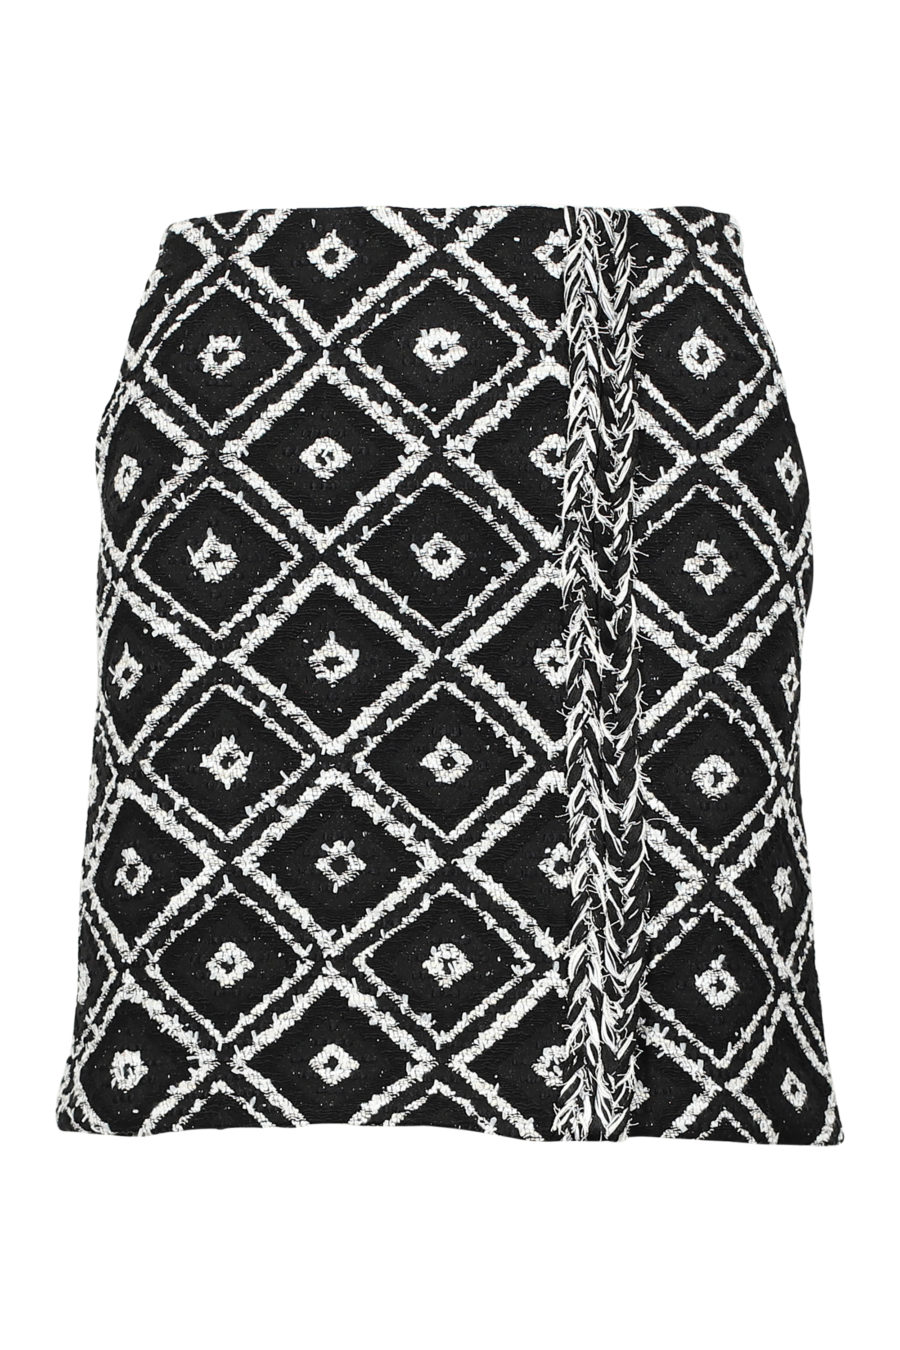 Falda negra y blanca geométrica "Boucle" - IMG 3177